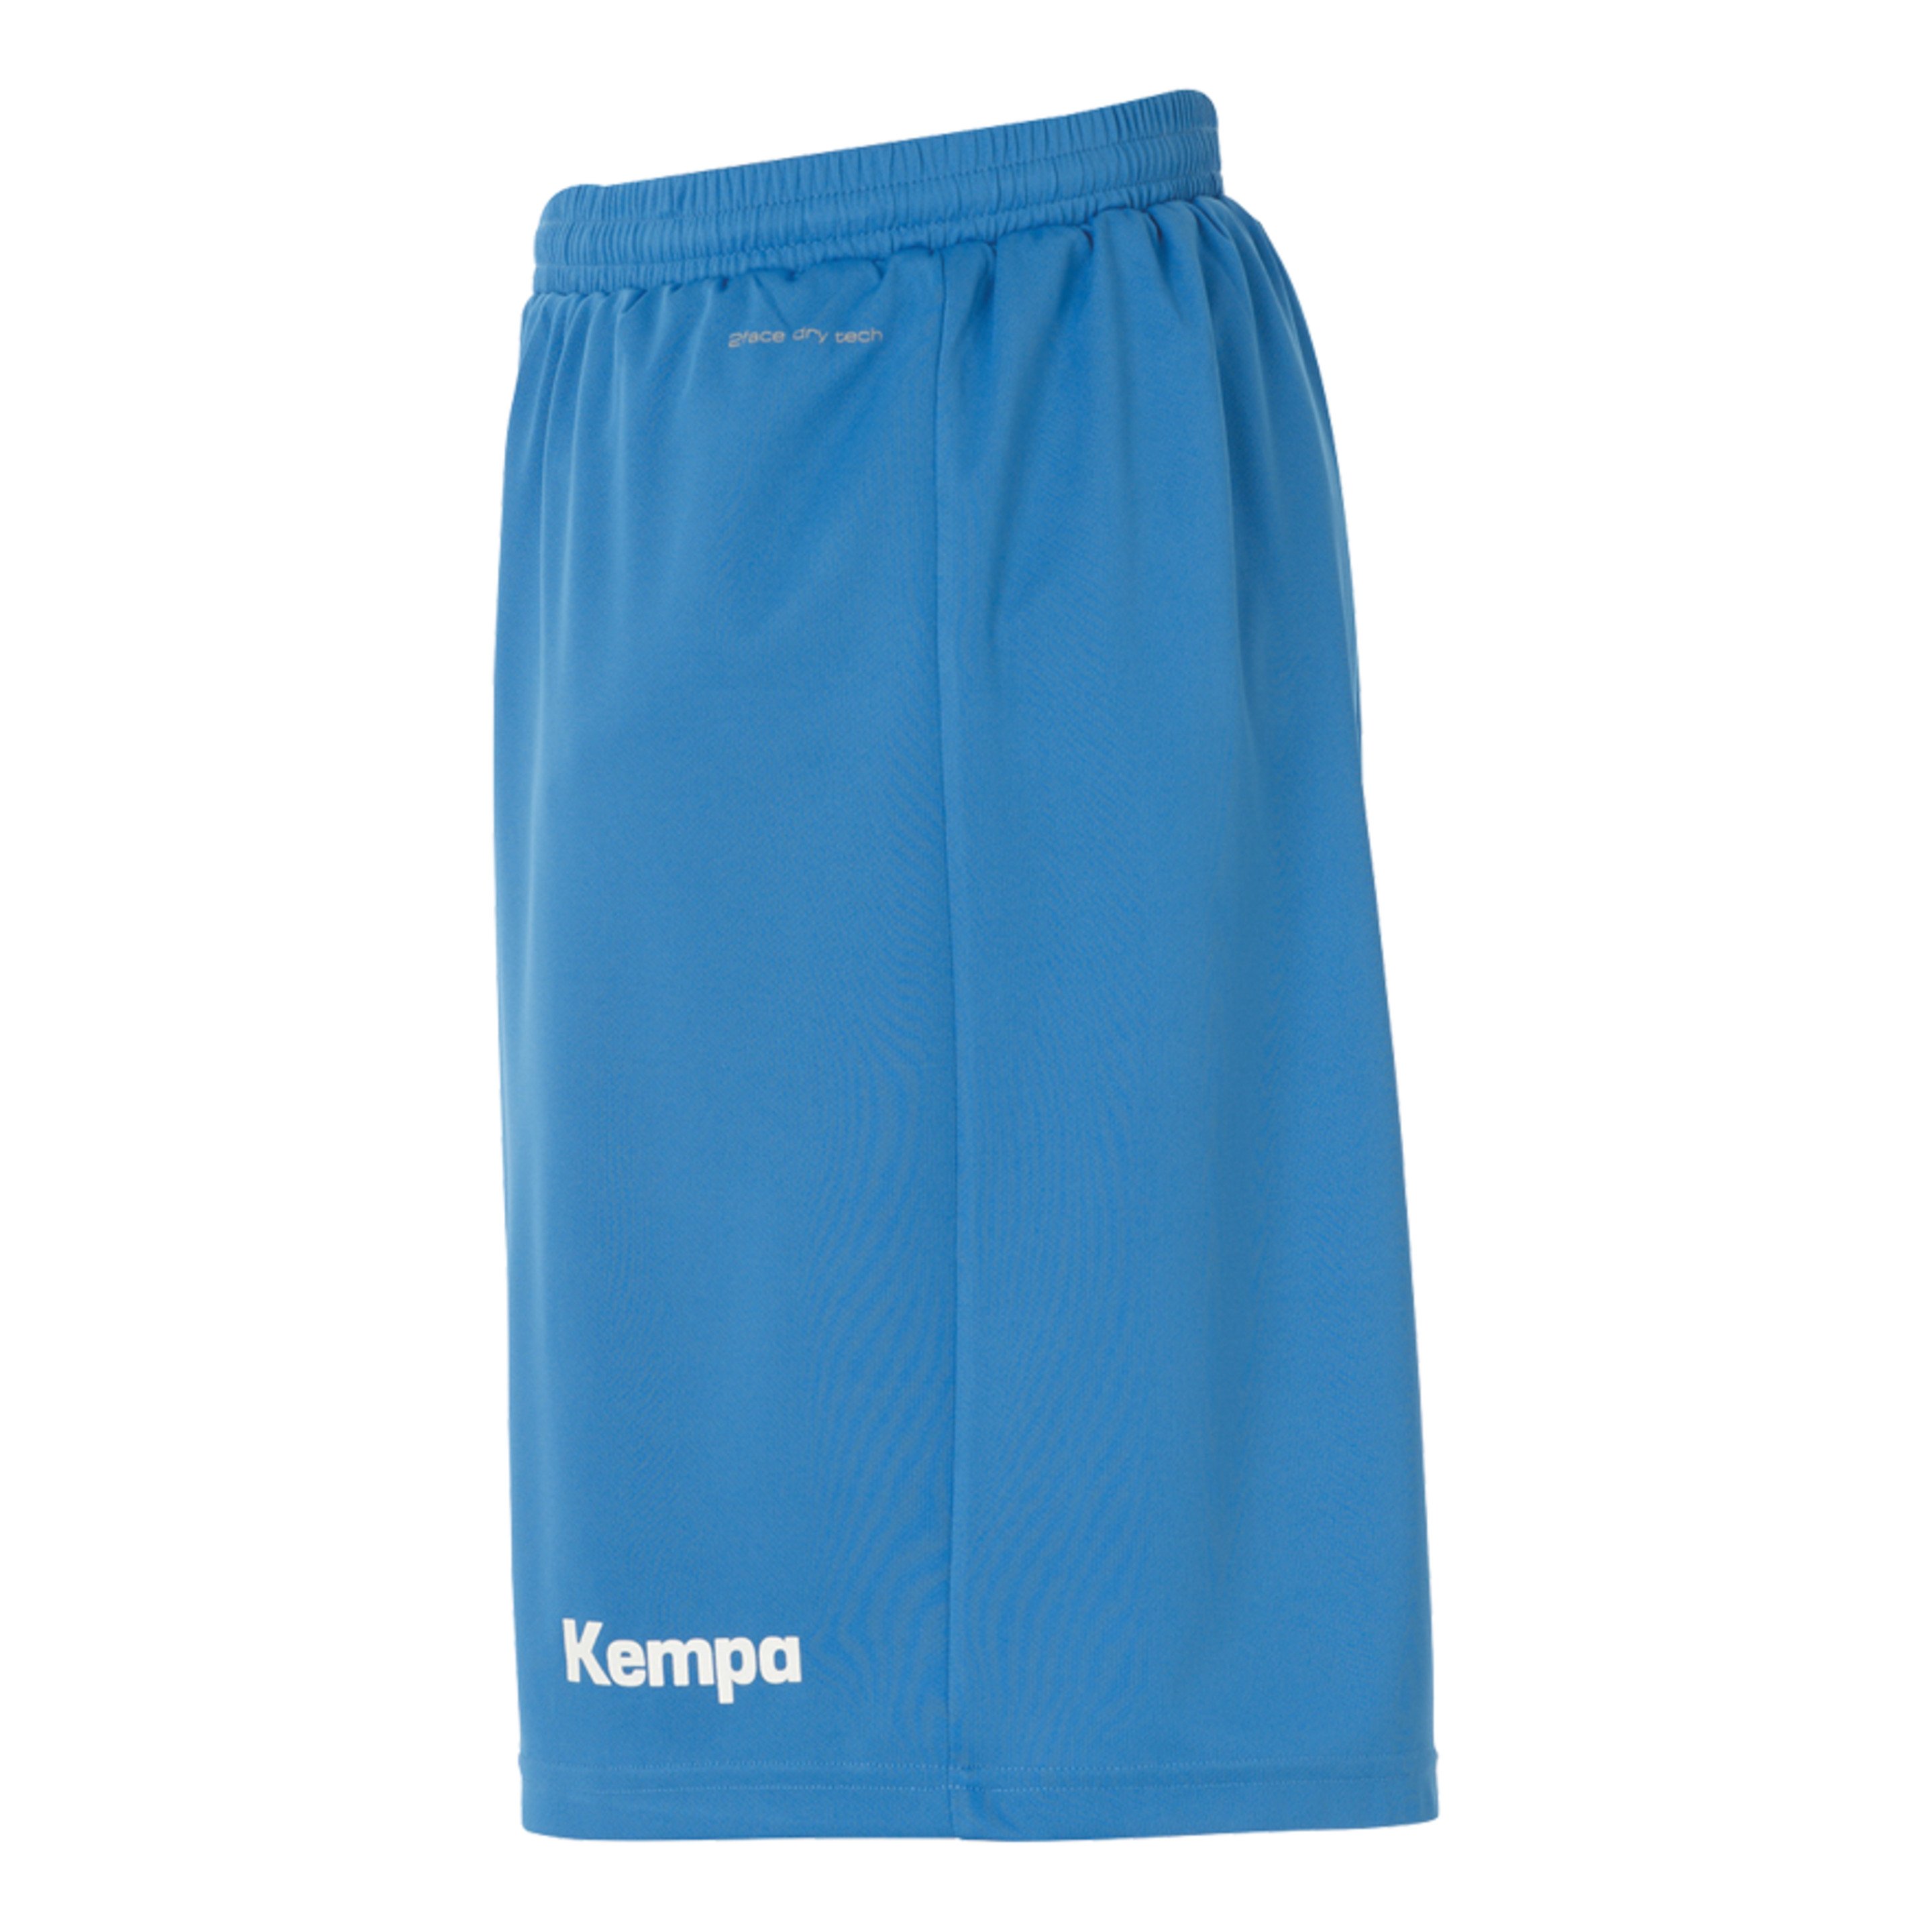 Peak Shorts Kempa Azul/negro Kempa